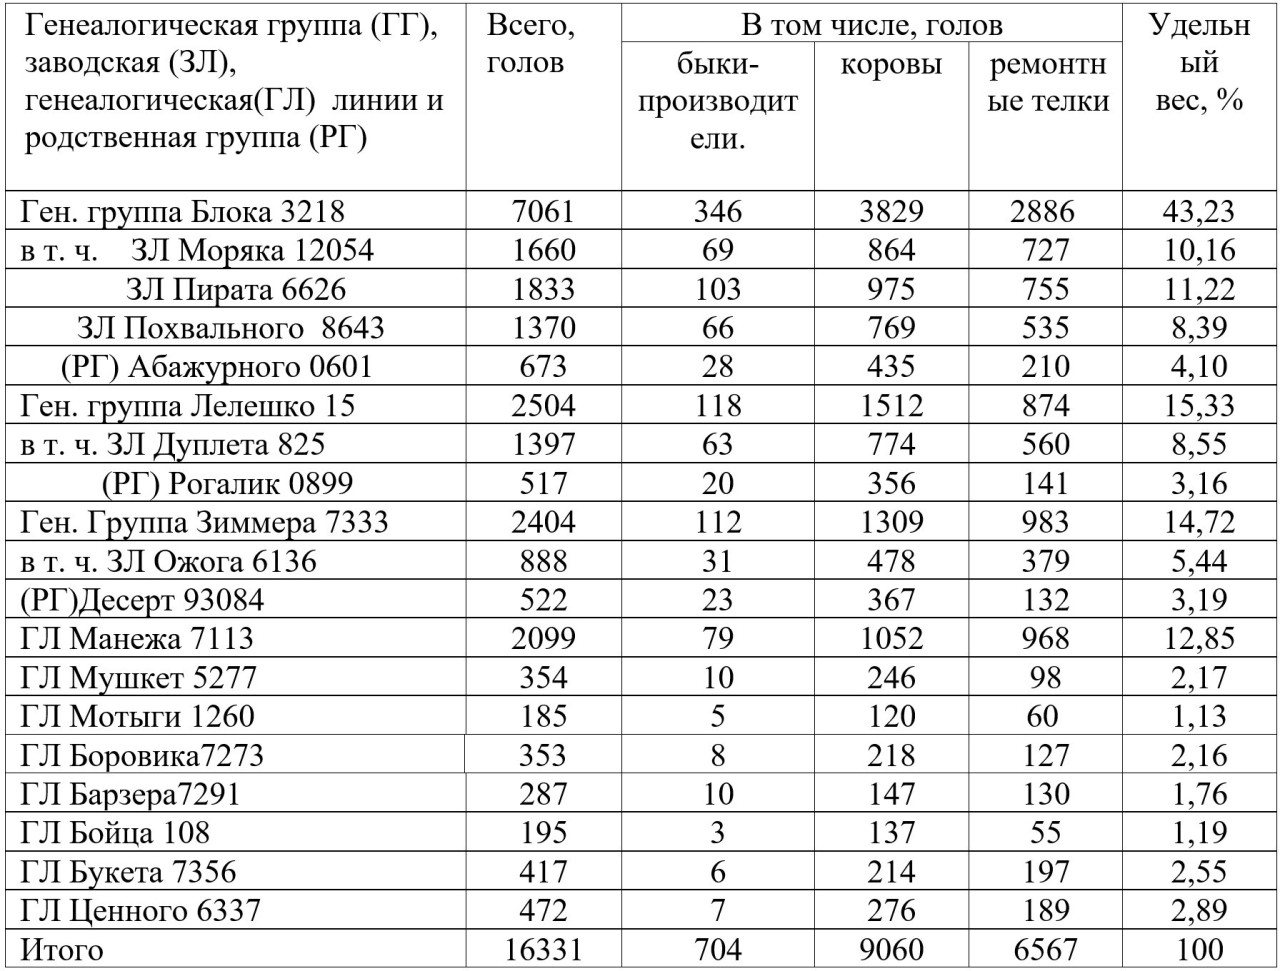 Таблица 1
–&nbsp; Структура&nbsp; поголовья калмыцкого скота Ростовской области